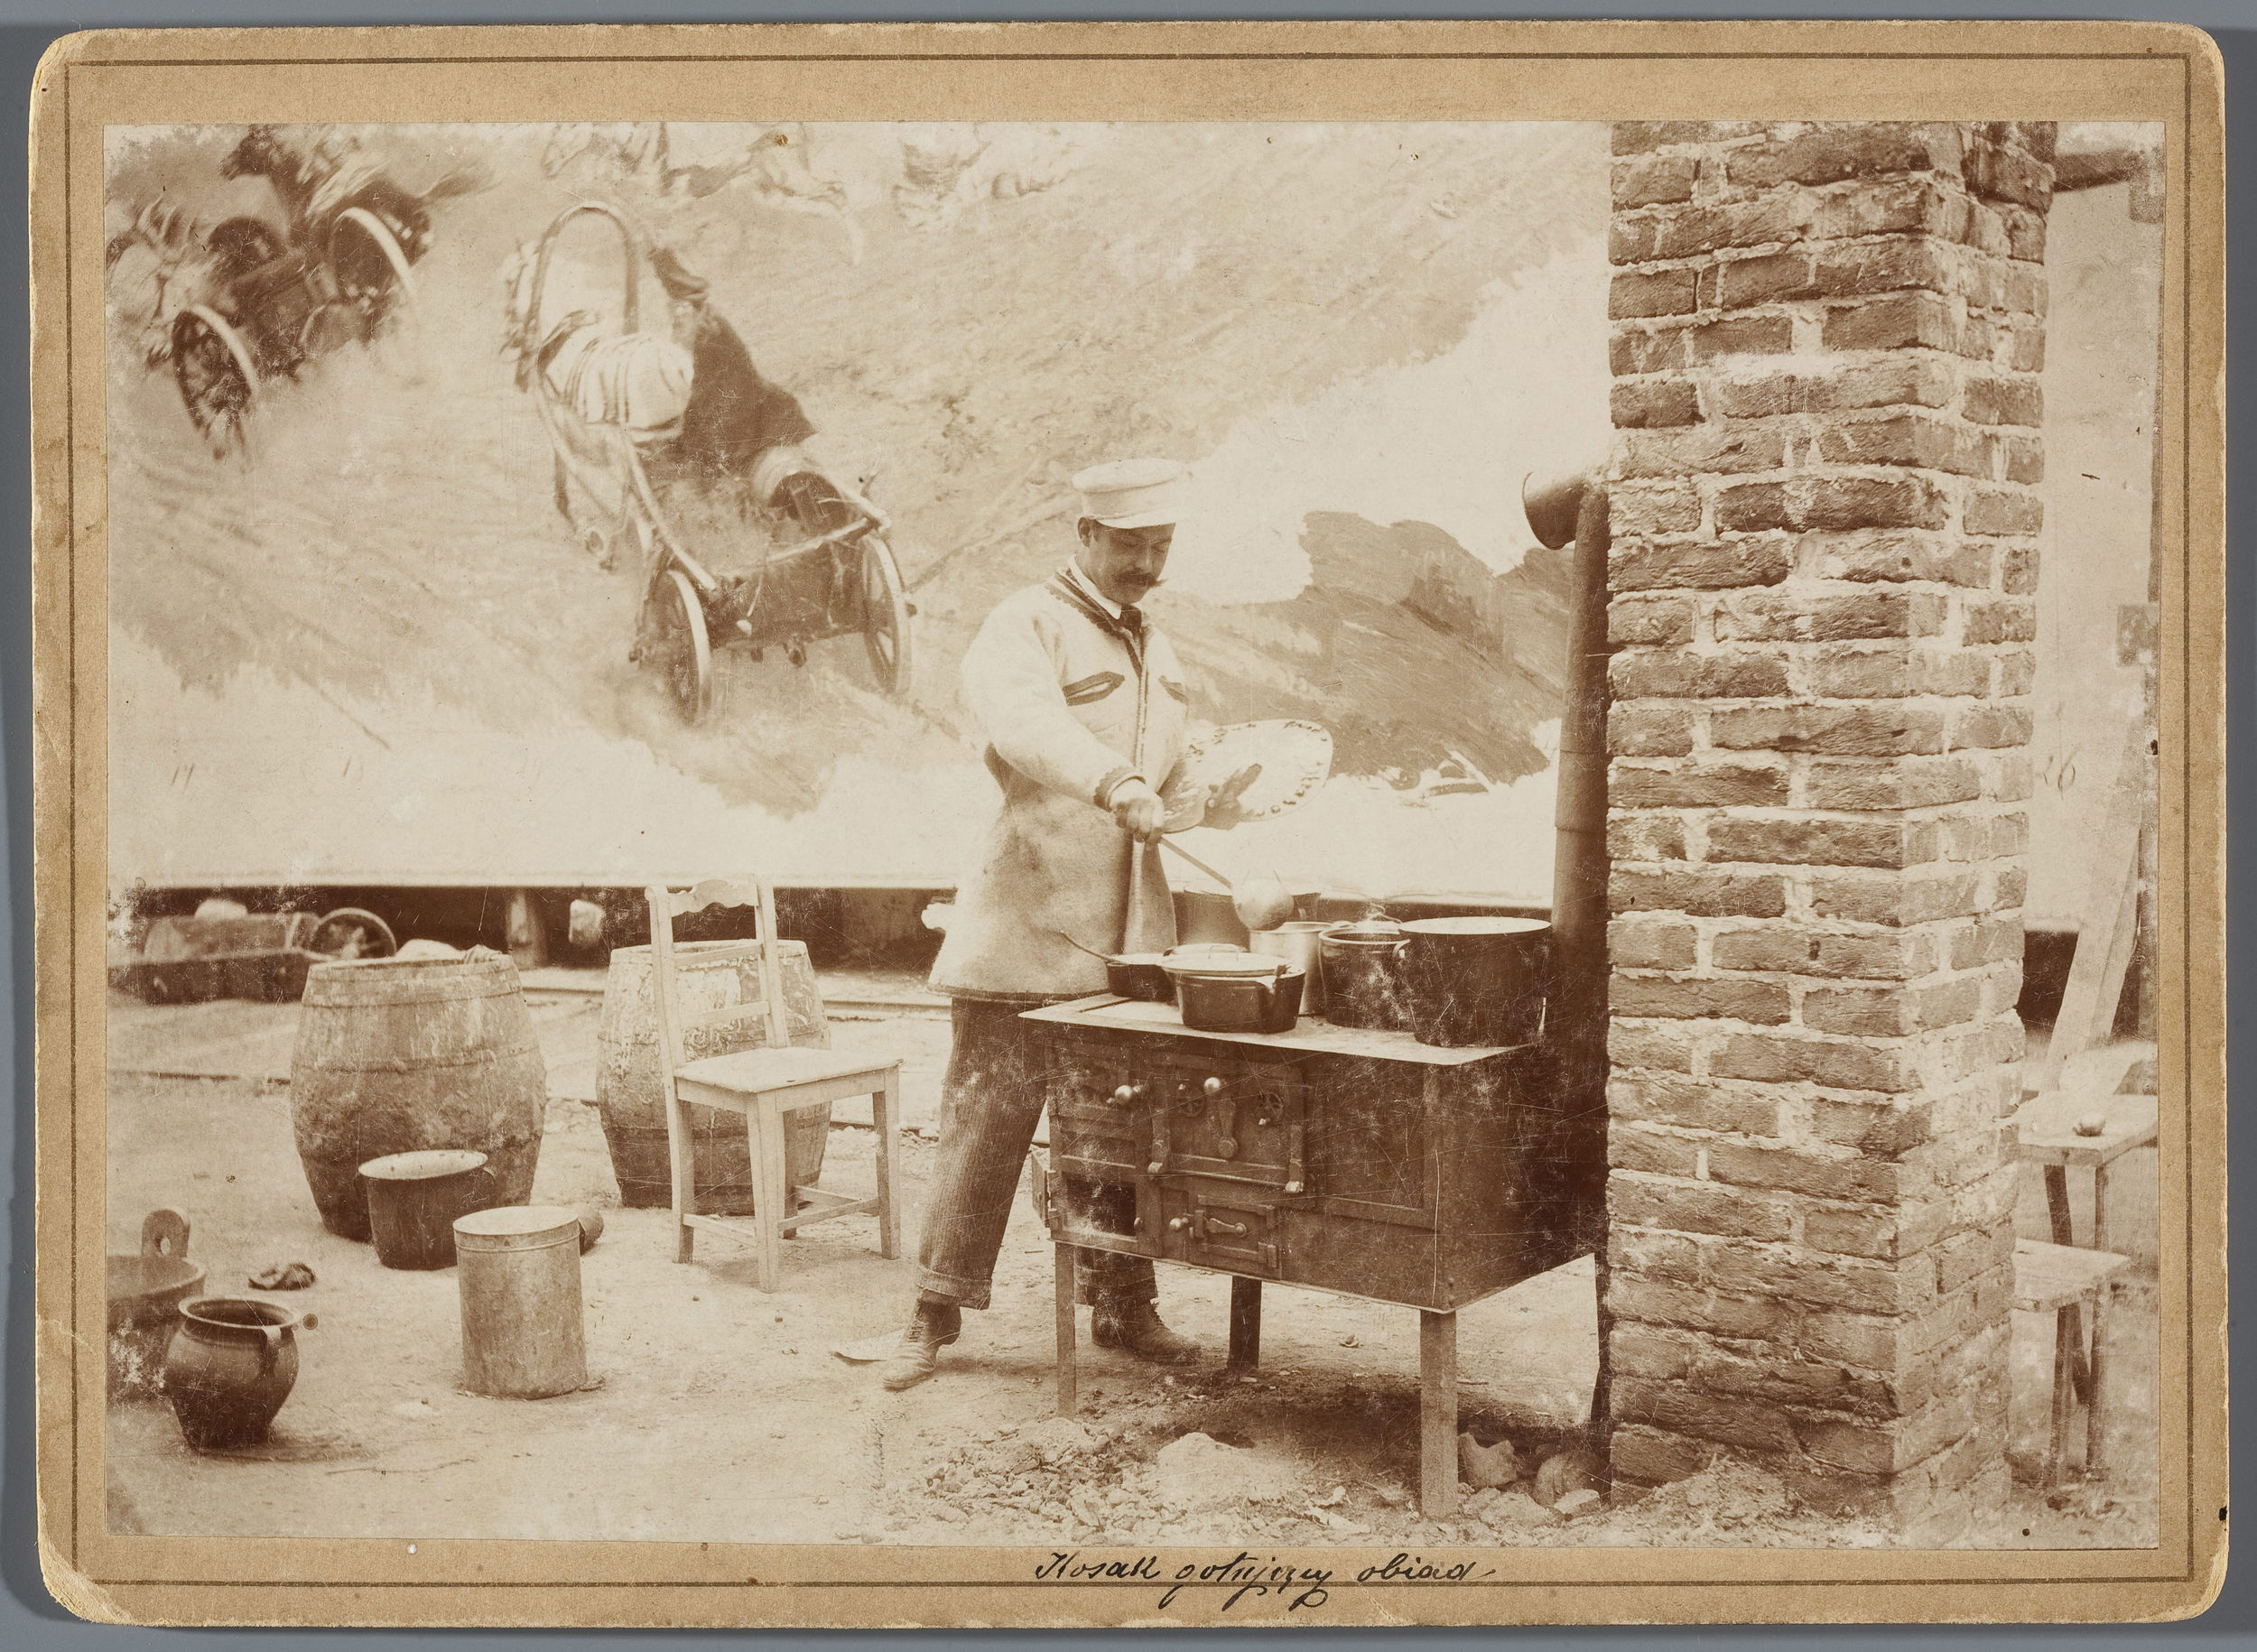 Wojciech Kossak z paletą w ręce gotujący obiad na prowizorycznej kuchni w rotundzie Panoramy Racławickiej, ok. 1893 roku, źródło: Muzeum Narodowe w Warszawie